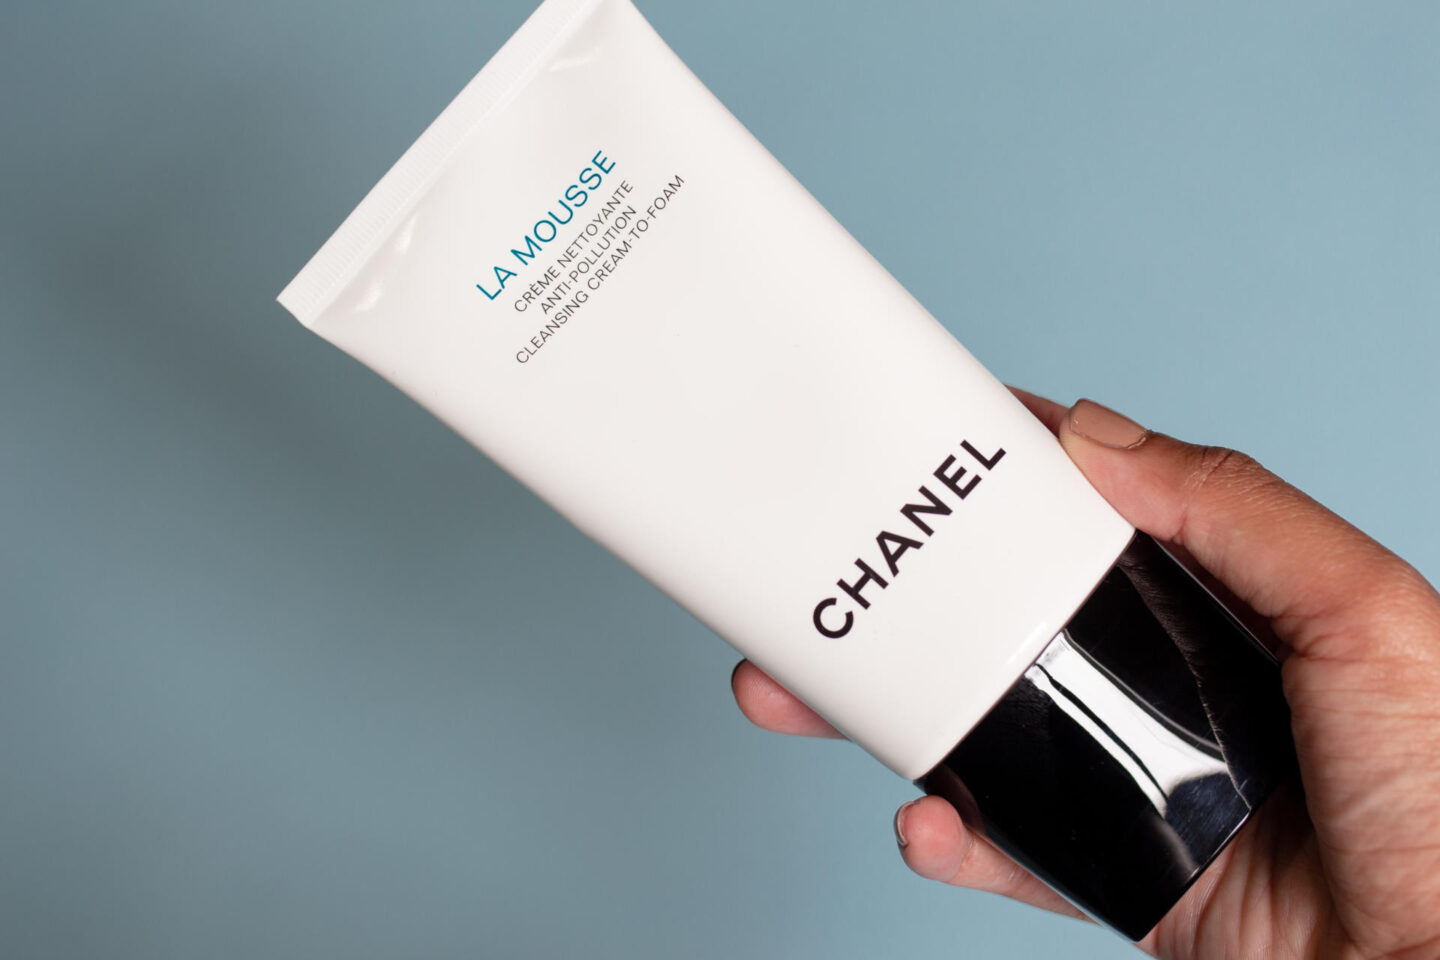 Chanel La Mousse Cleanser Review